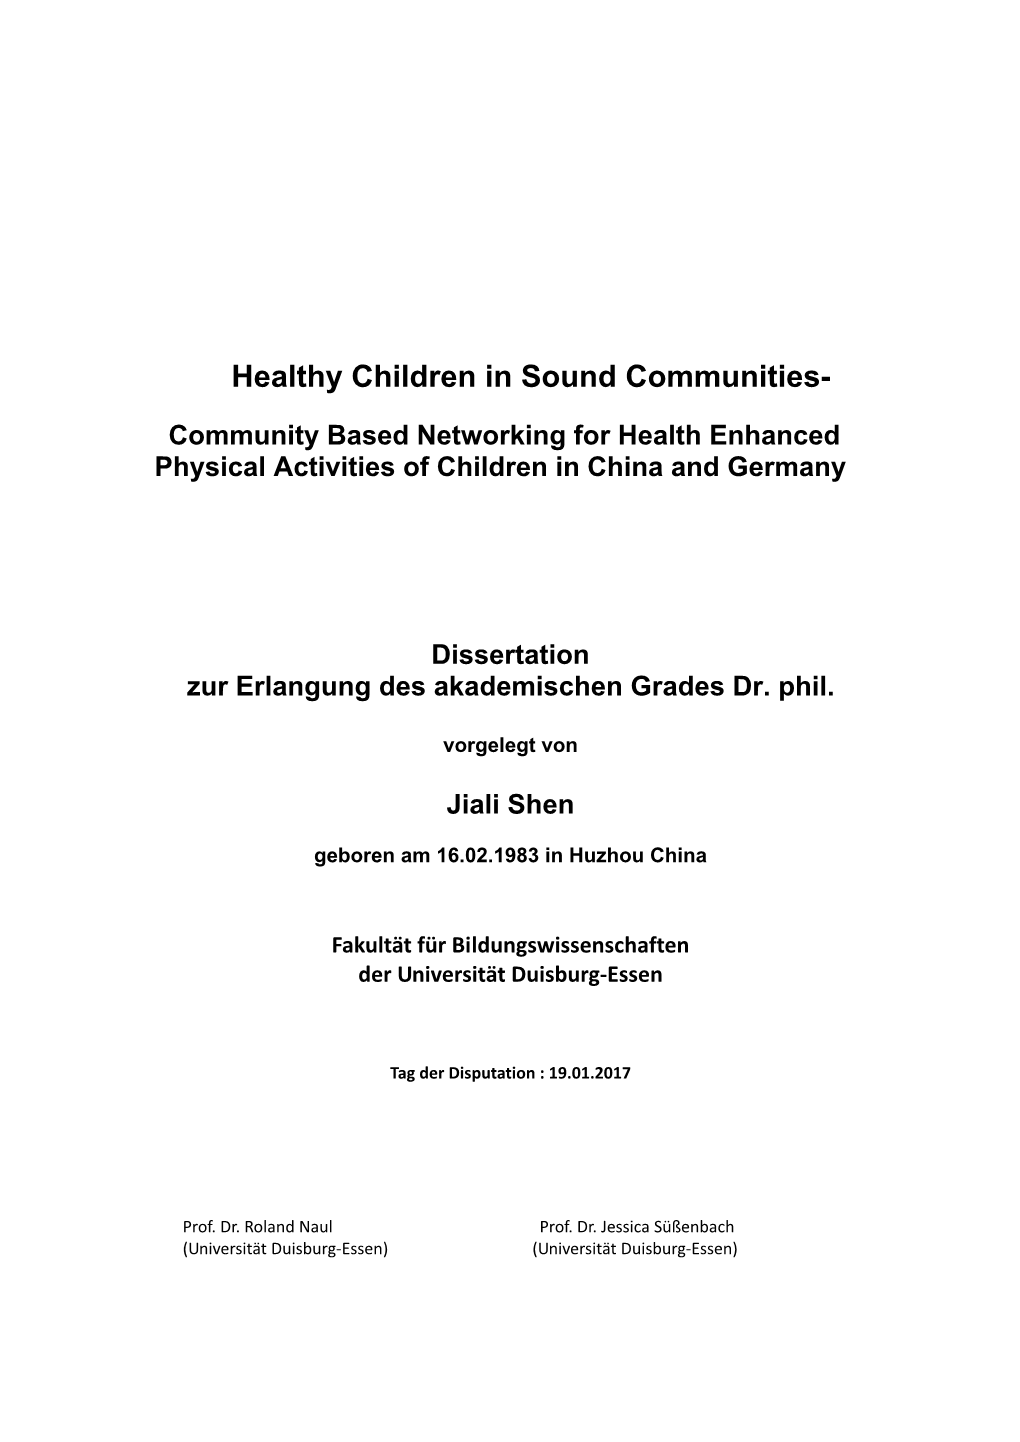 Healthy Children in Sound Communities